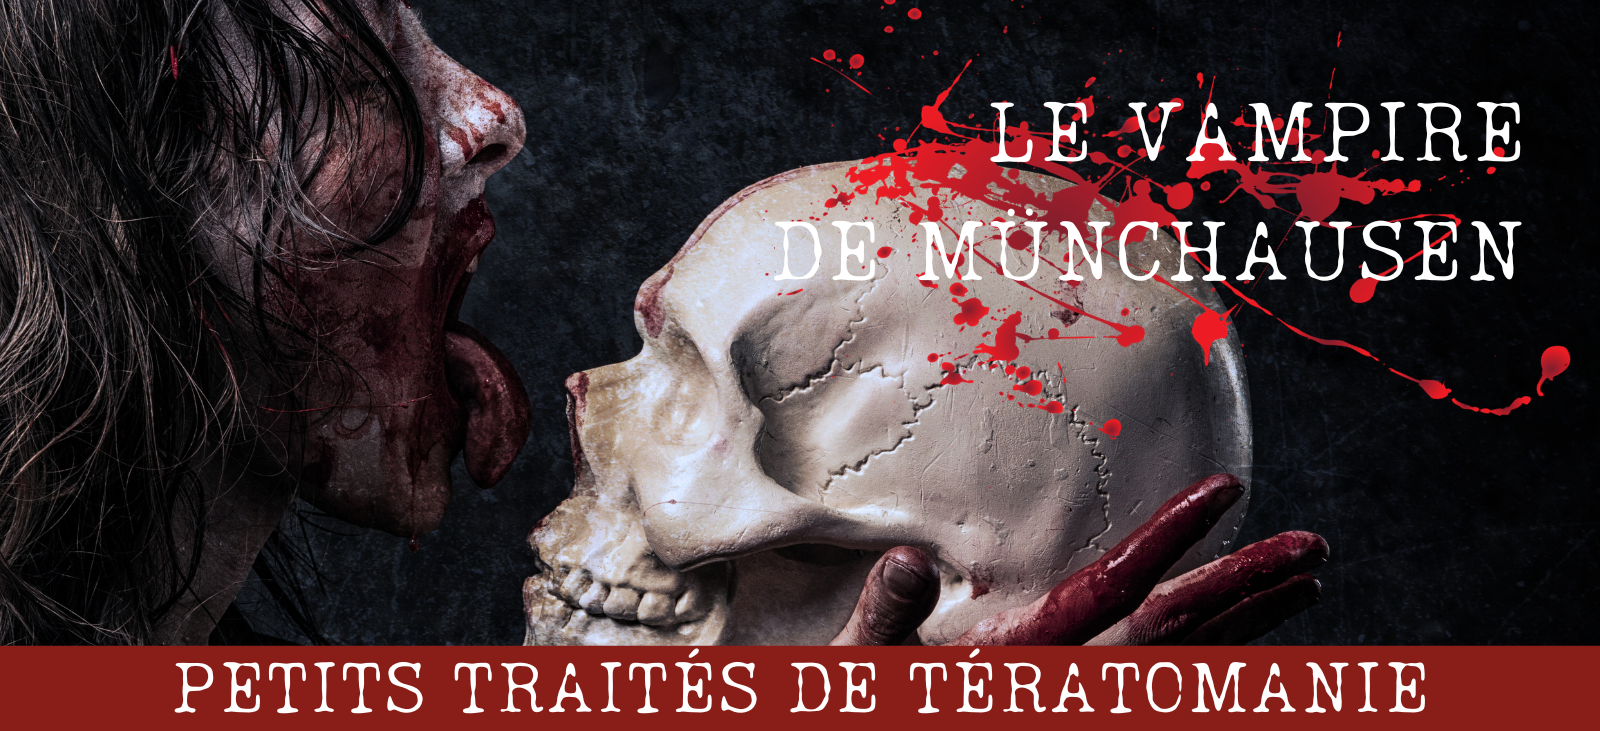 Traité de Tératomanie #1: le Vampire de Münchausen